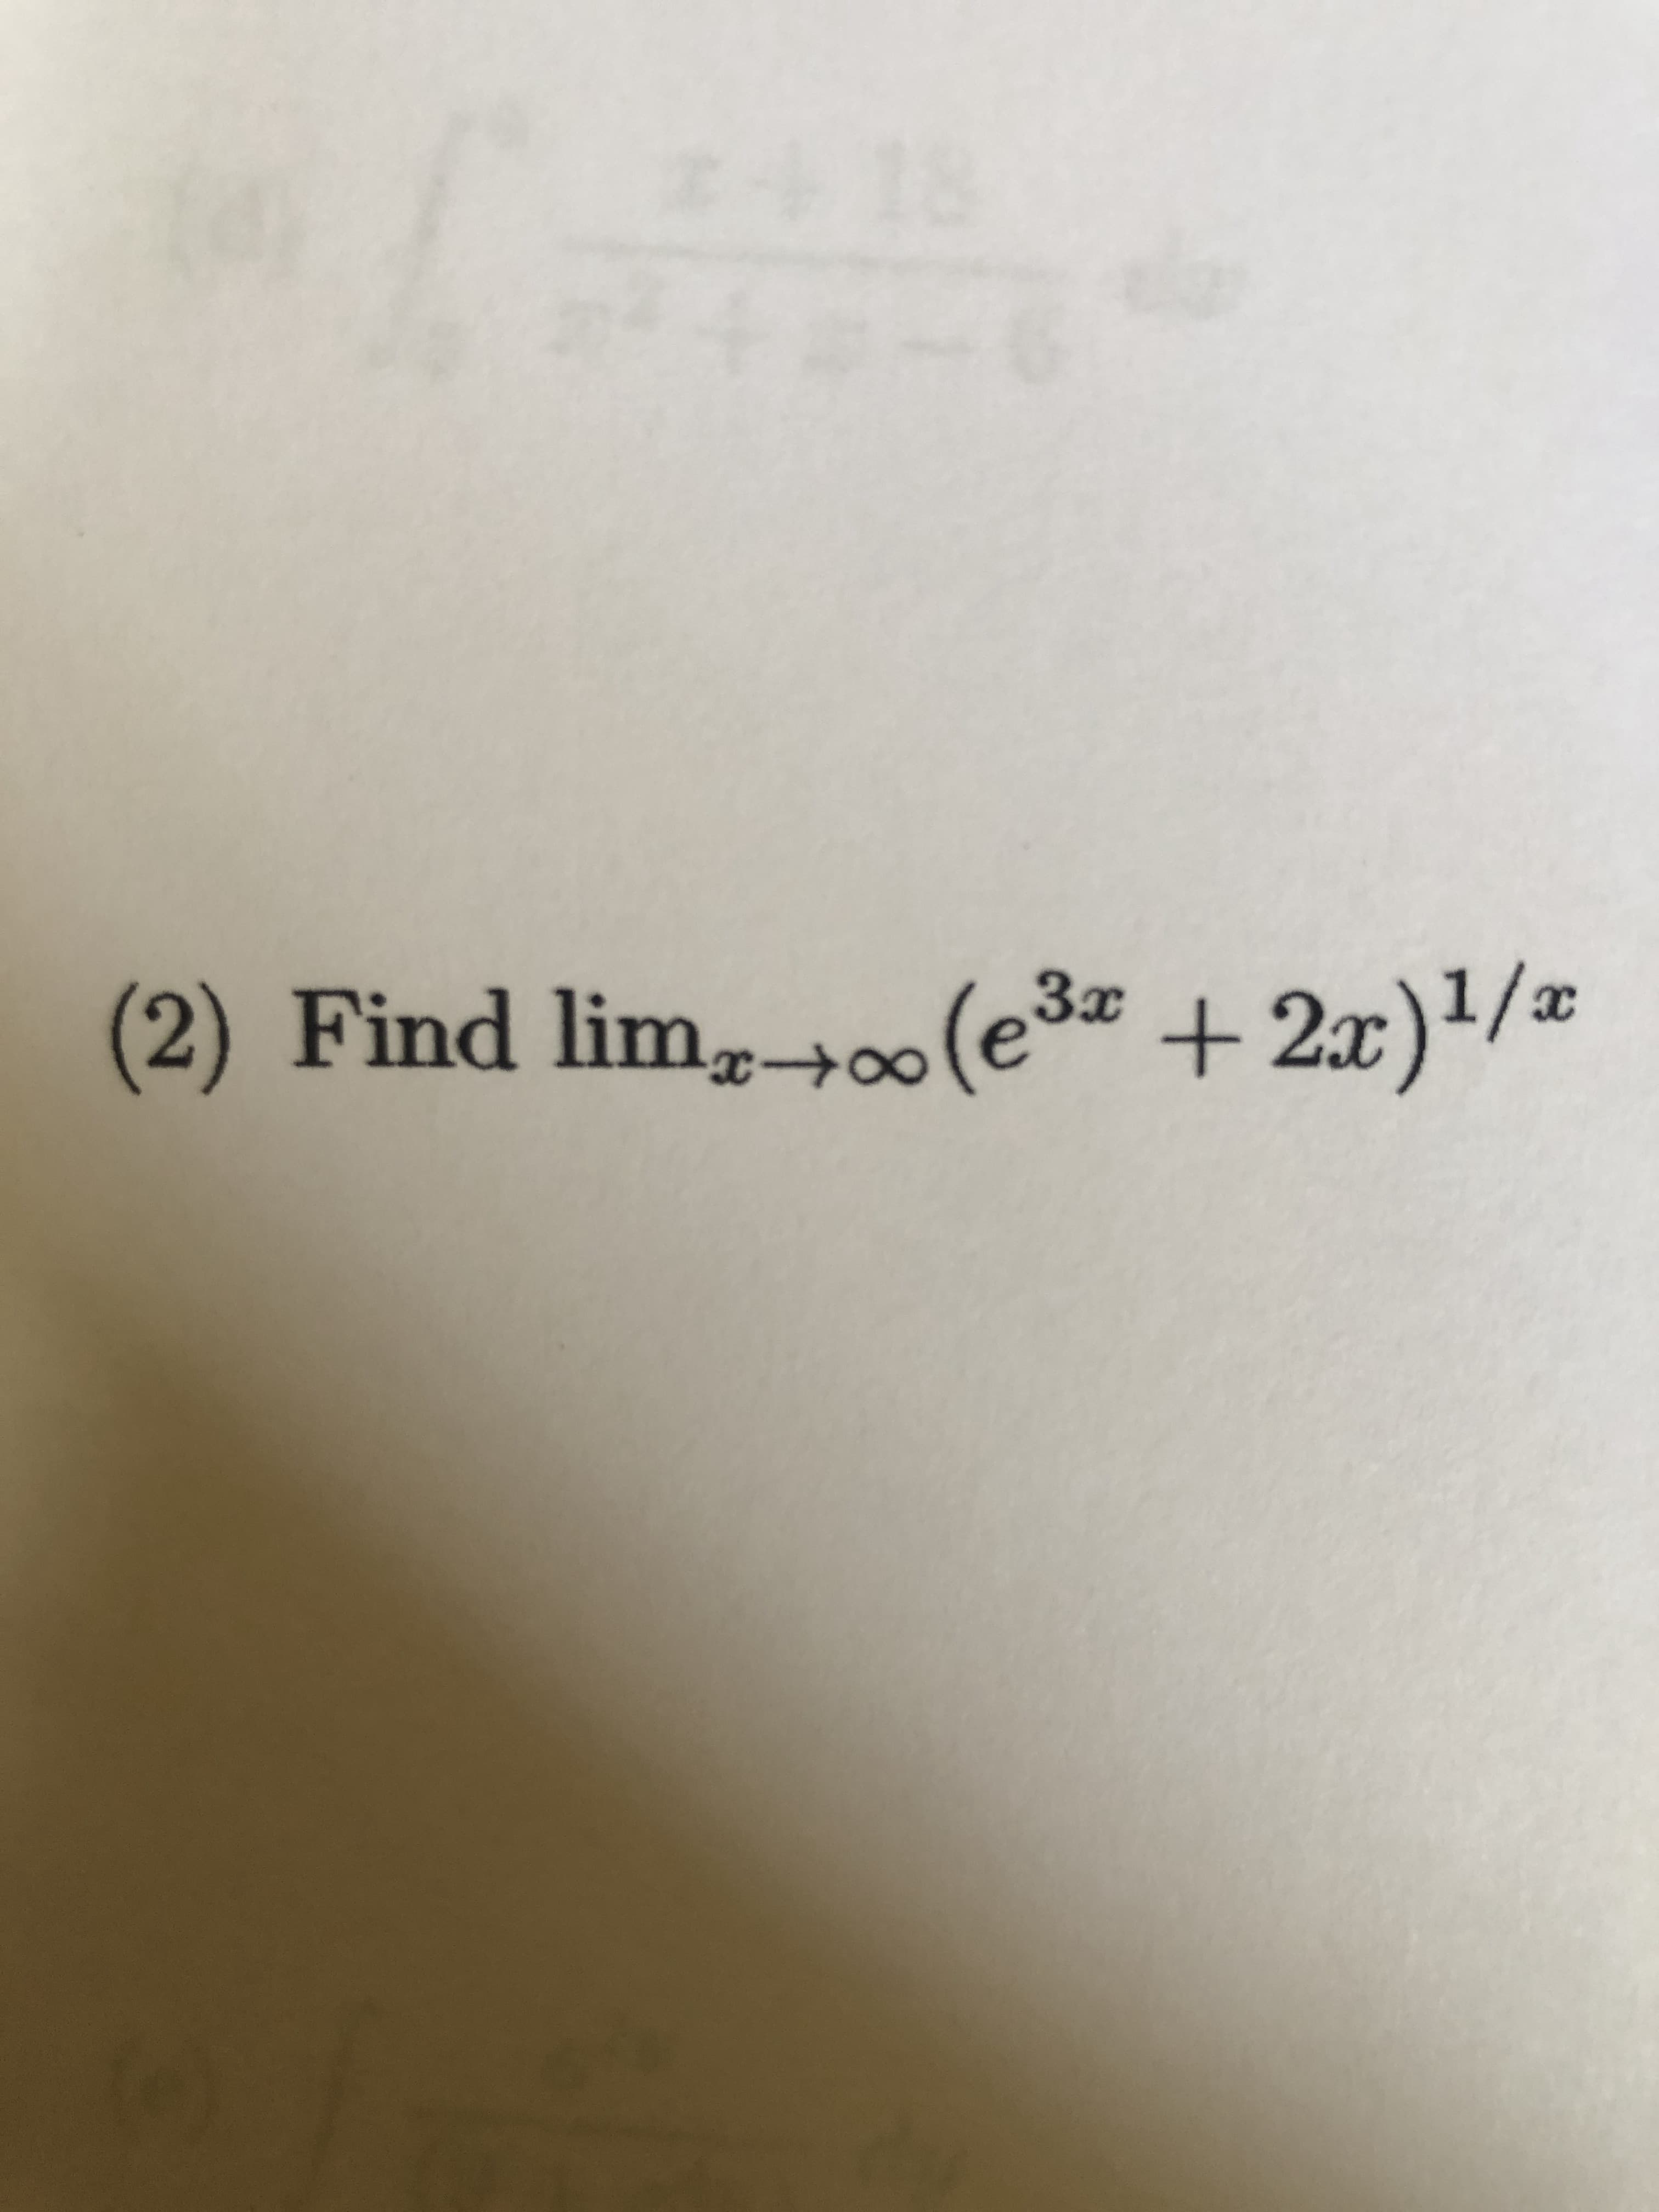 Find lim,00(e3 +2x)/*
1/x
